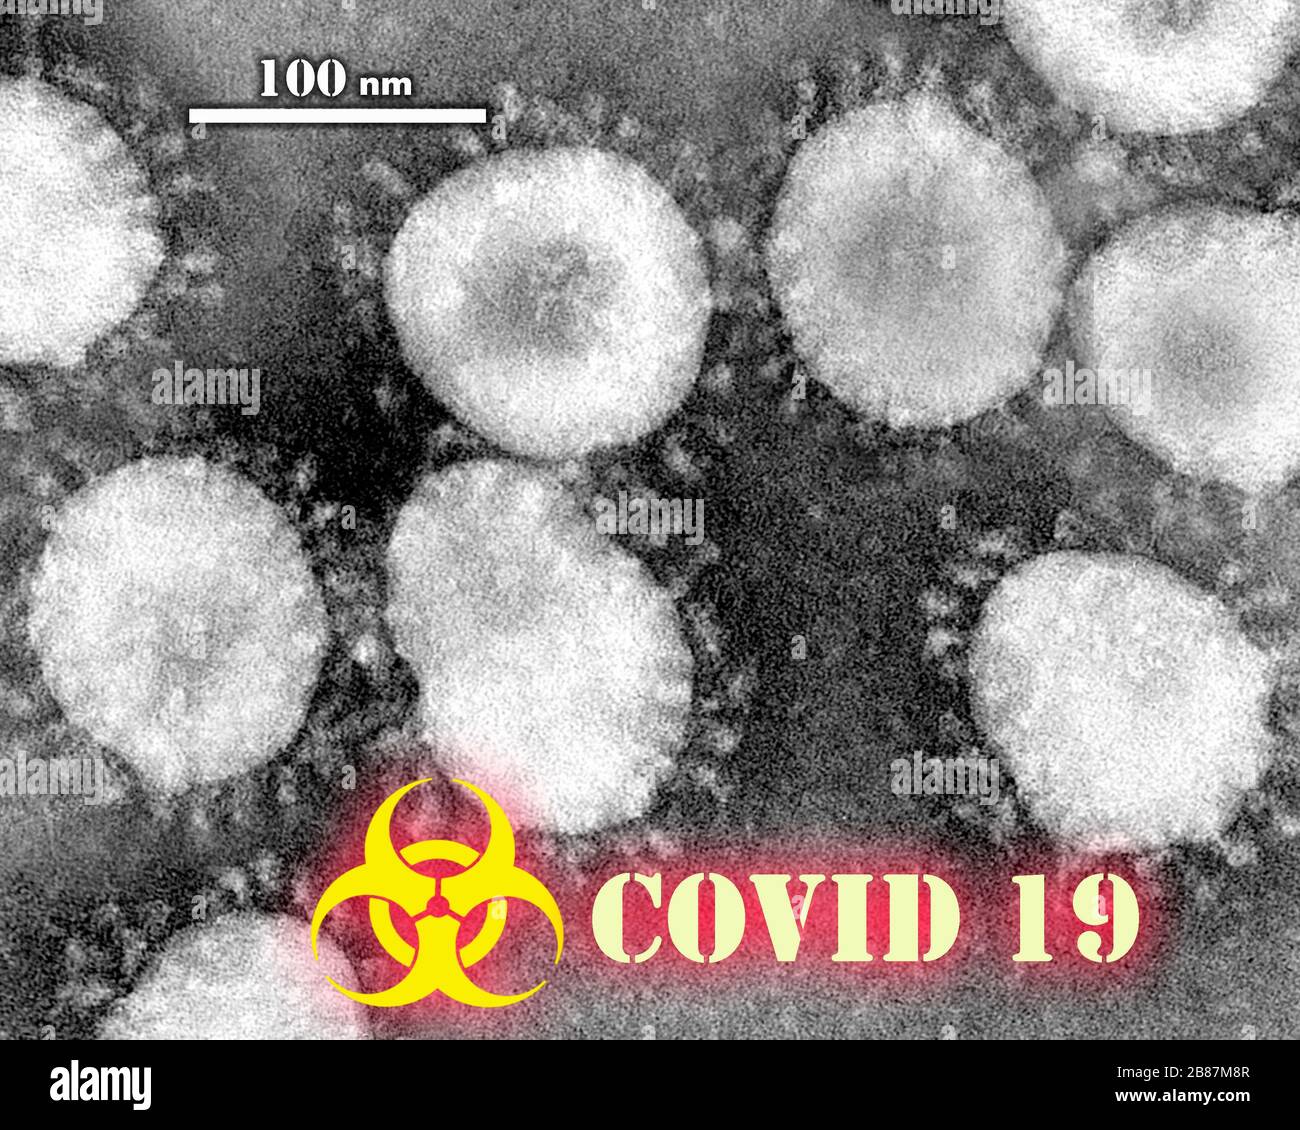 Coronavirus - COVID-19. Sindrome respiratoria acuta grave coronavirus 2 (SARS-cov-2), precedentemente noto con il nome provvisorio 2019 nuovo coronavirus Foto Stock